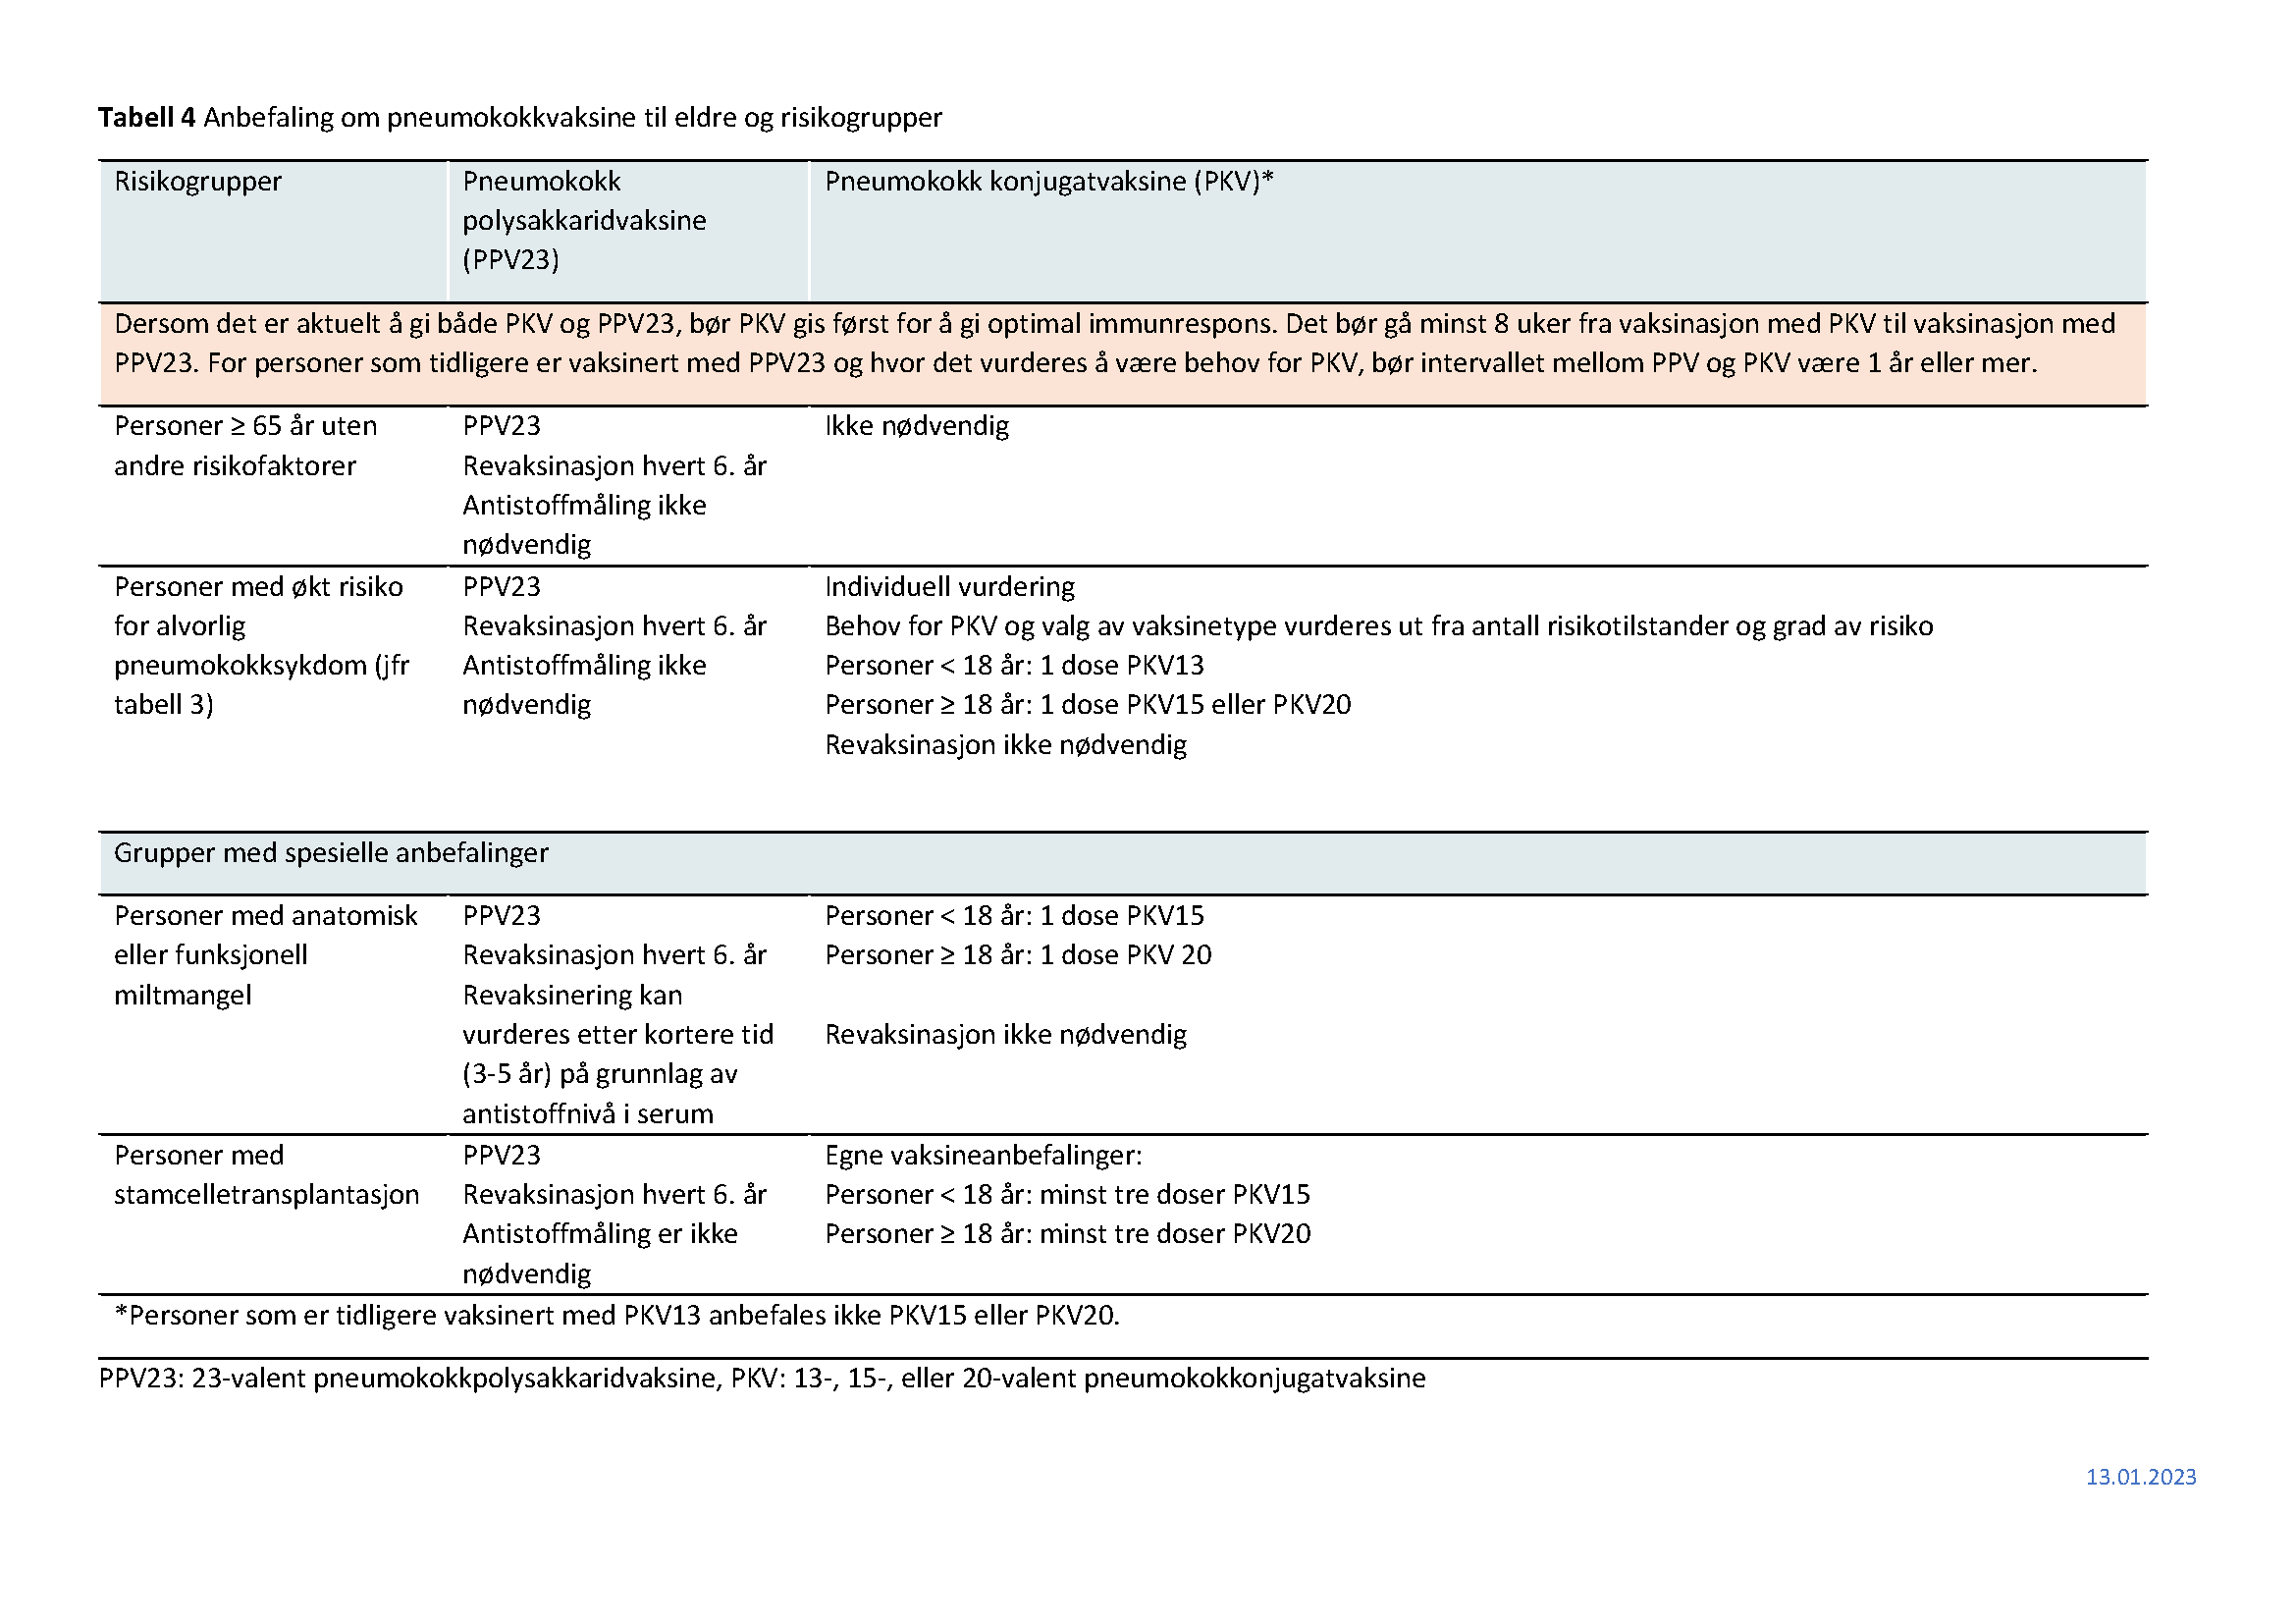 bilde av tabell 4 med anbefaling om pneumokokkvaksine til eldre og risikogrupper